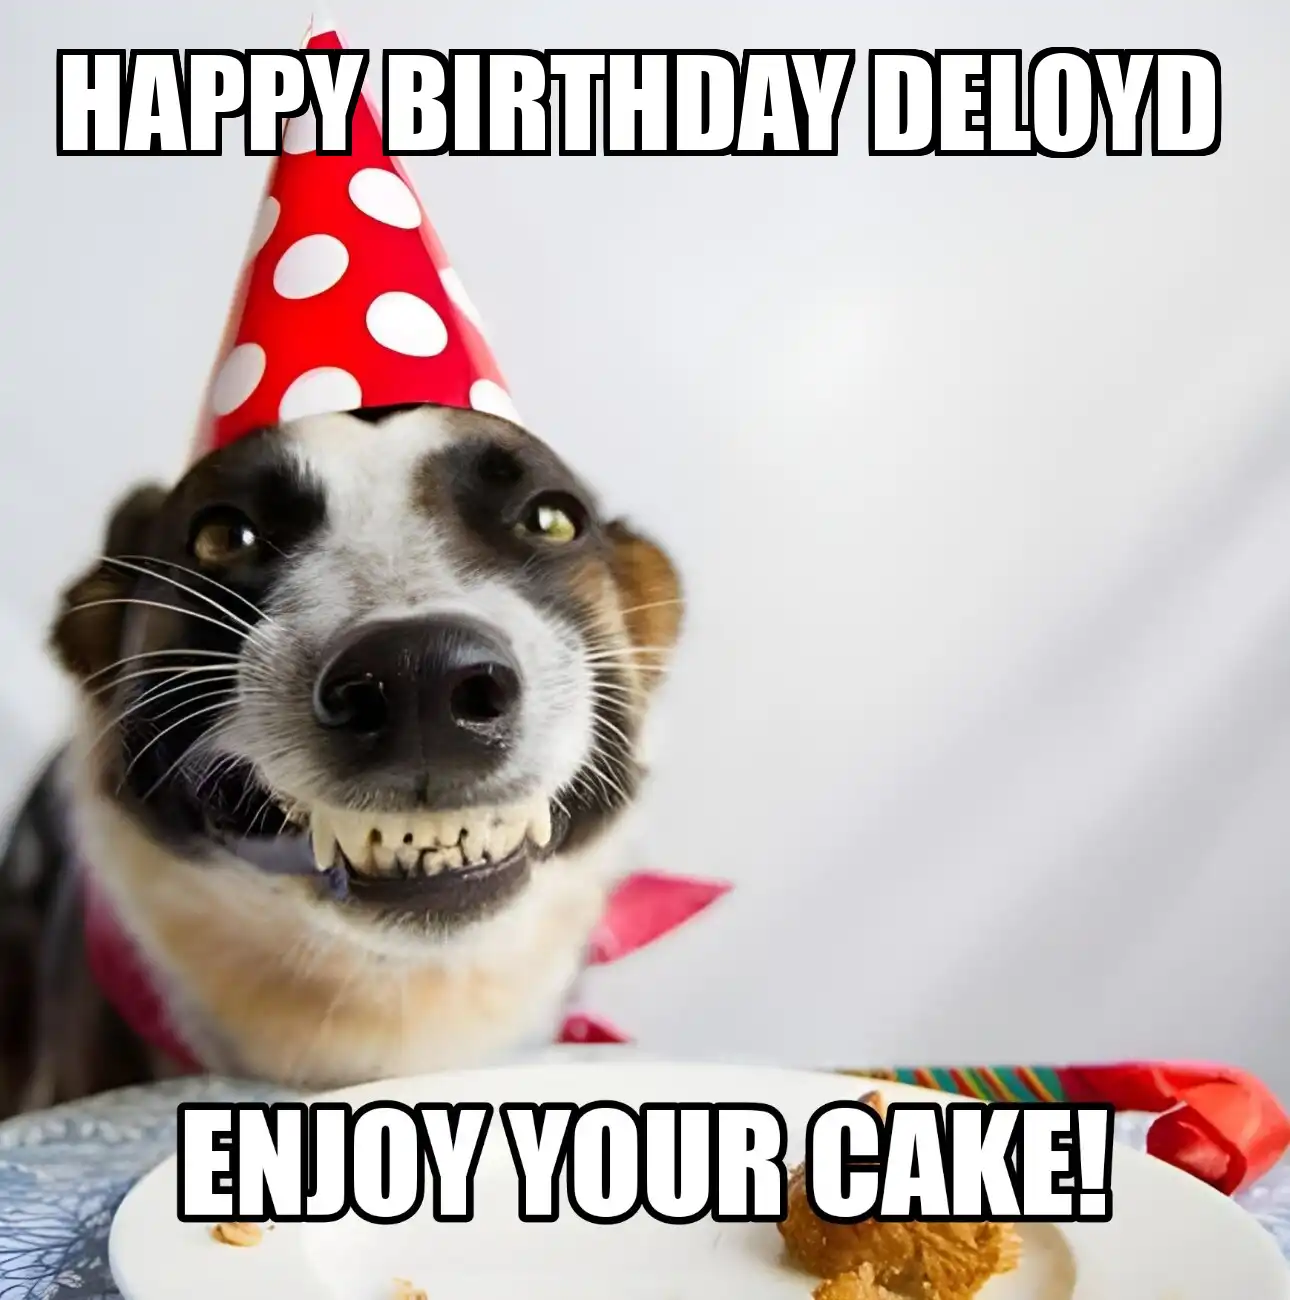 Happy Birthday Deloyd Enjoy Your Cake Dog Meme